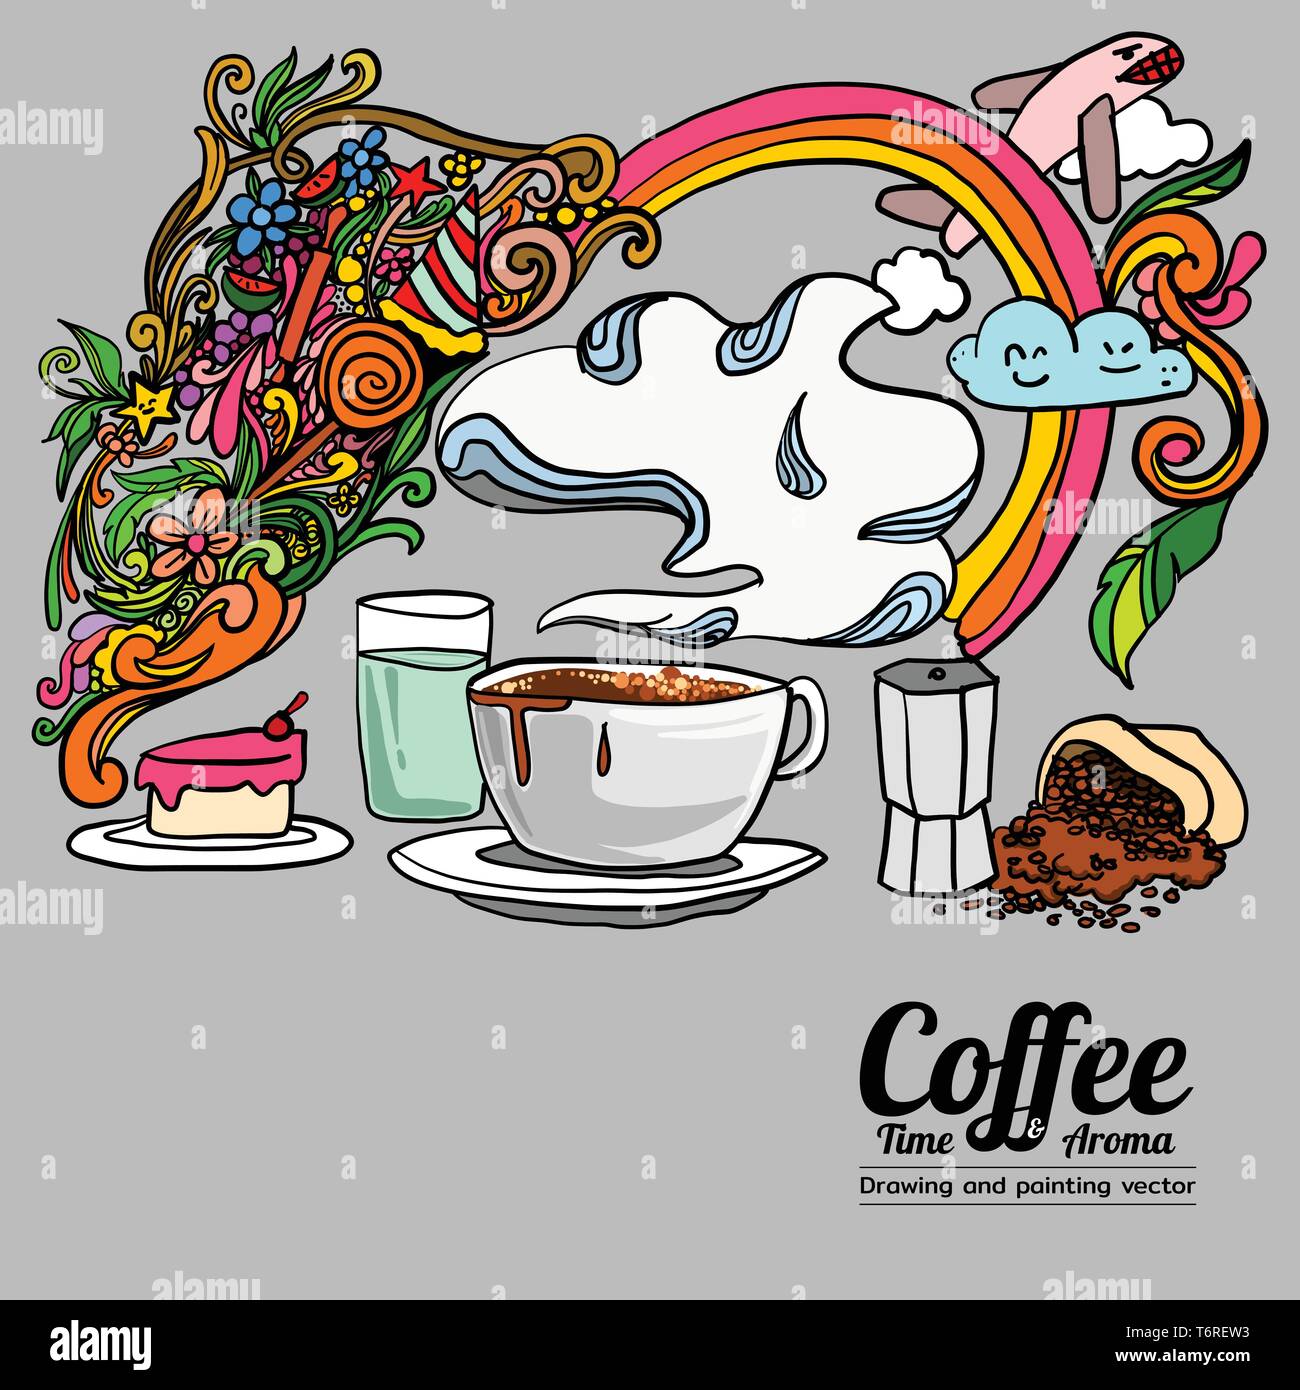 L'heure du café et de l'arôme - dessiner et peindre dans le style doodle Illustration de Vecteur